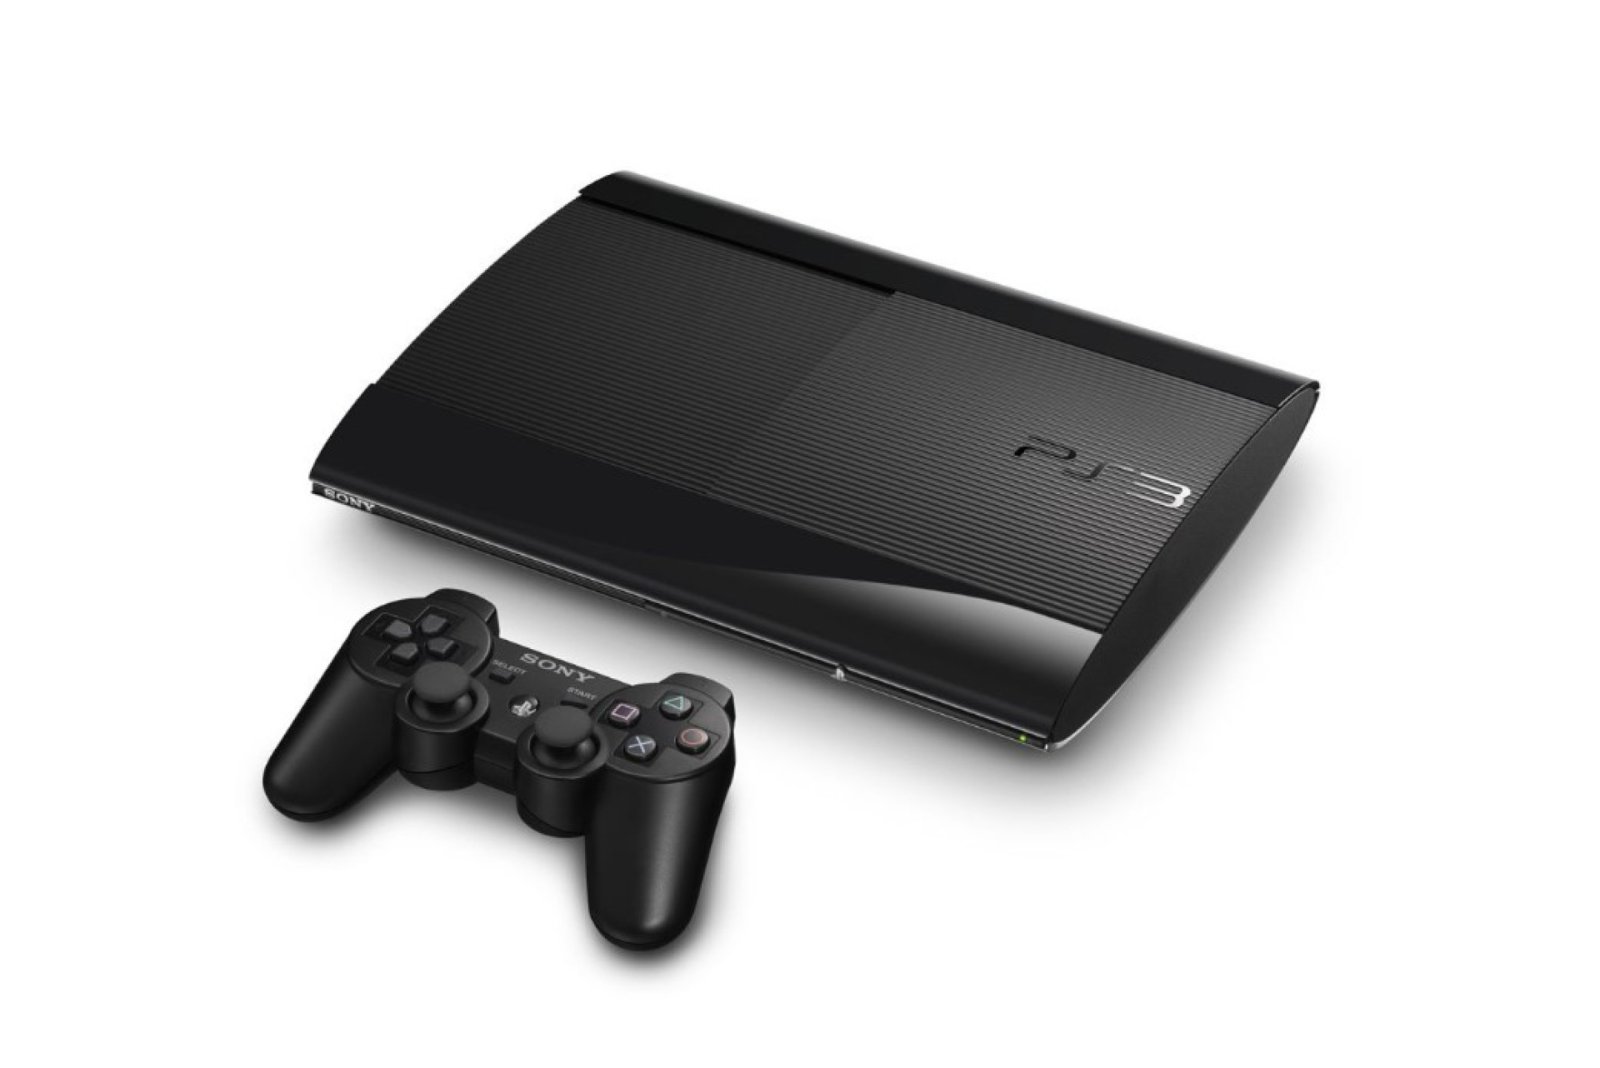 PlayStation 3 แม้จะมีอายุกว่า 17 ปี เชื่อไหมว่าปัจจุบันยังมีผู้ใช้งานเครื่องนี้กว่าล้านคนต่อเดือน